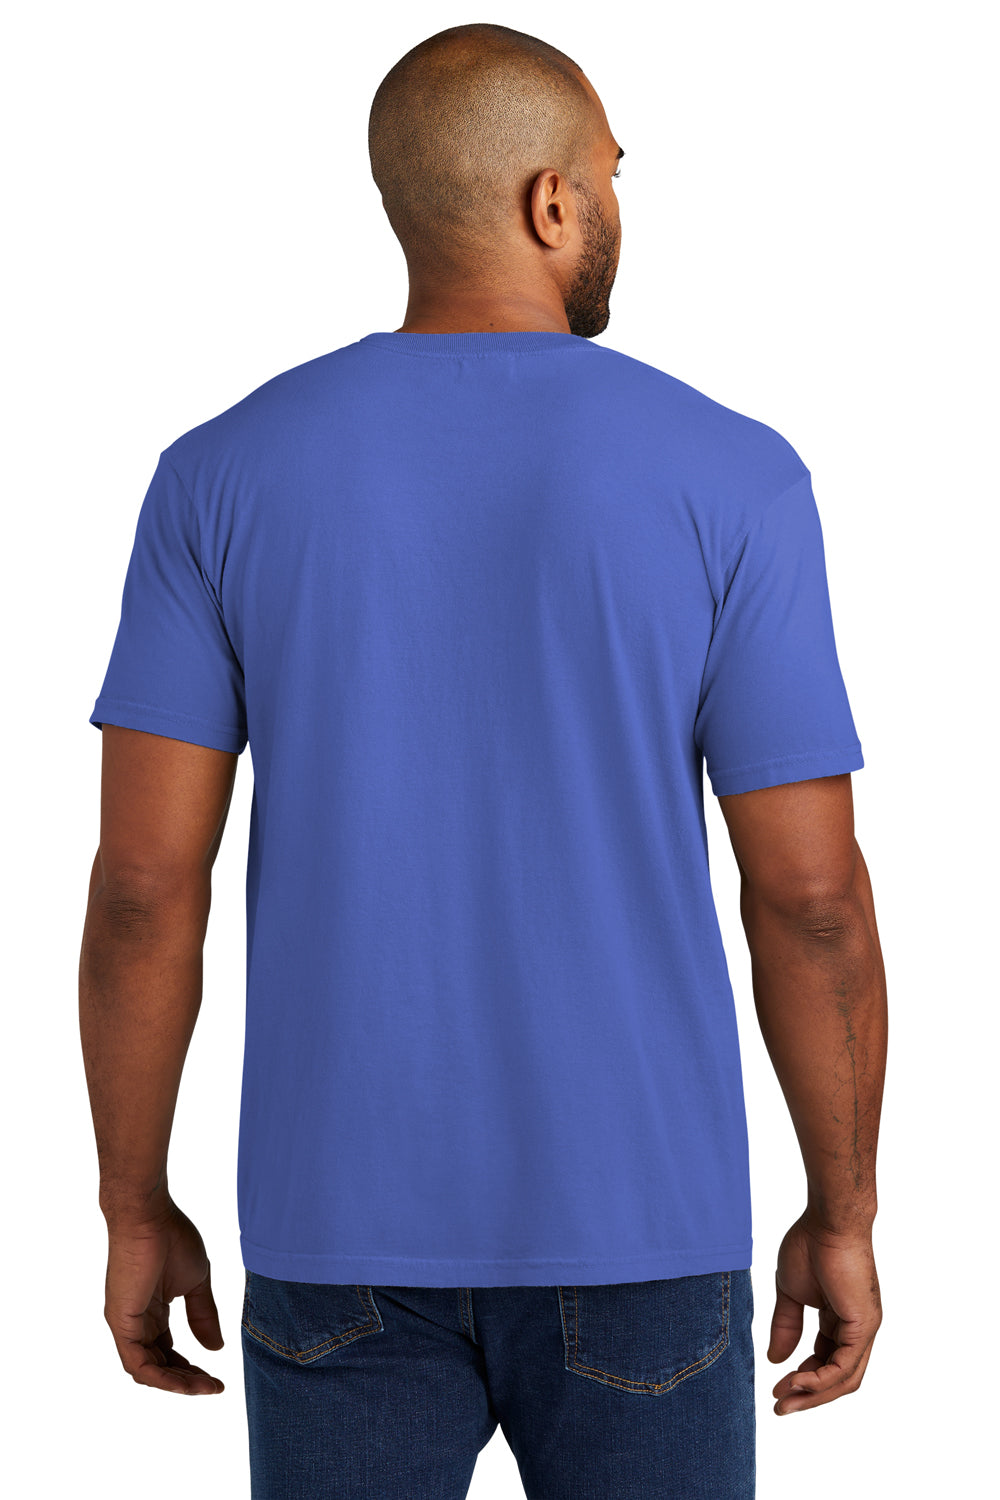 Comfort Colors Mens Short Sleeve Crewneck T-Shirt w/ Pocket Mystic Blue Back